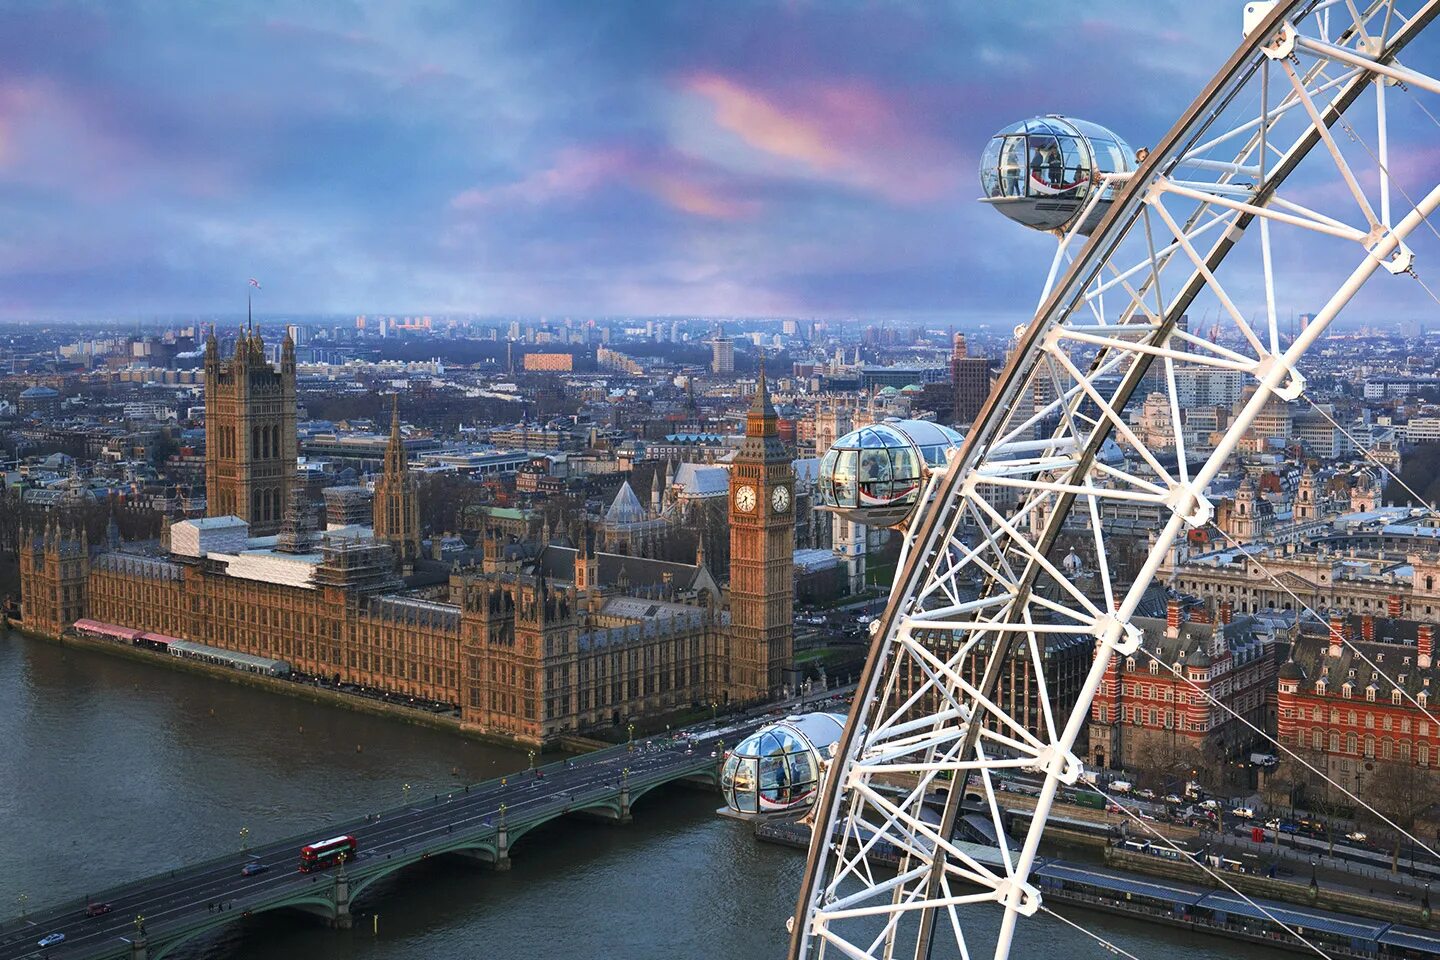 Какой центр лондона. Лондон колесо обозрения глаз Лондона. Лондонский глаз London Eye. Колесо обозрения "Лондонский глаз" (London Eye). Колесо обозрения London Eye Лондон Англия.